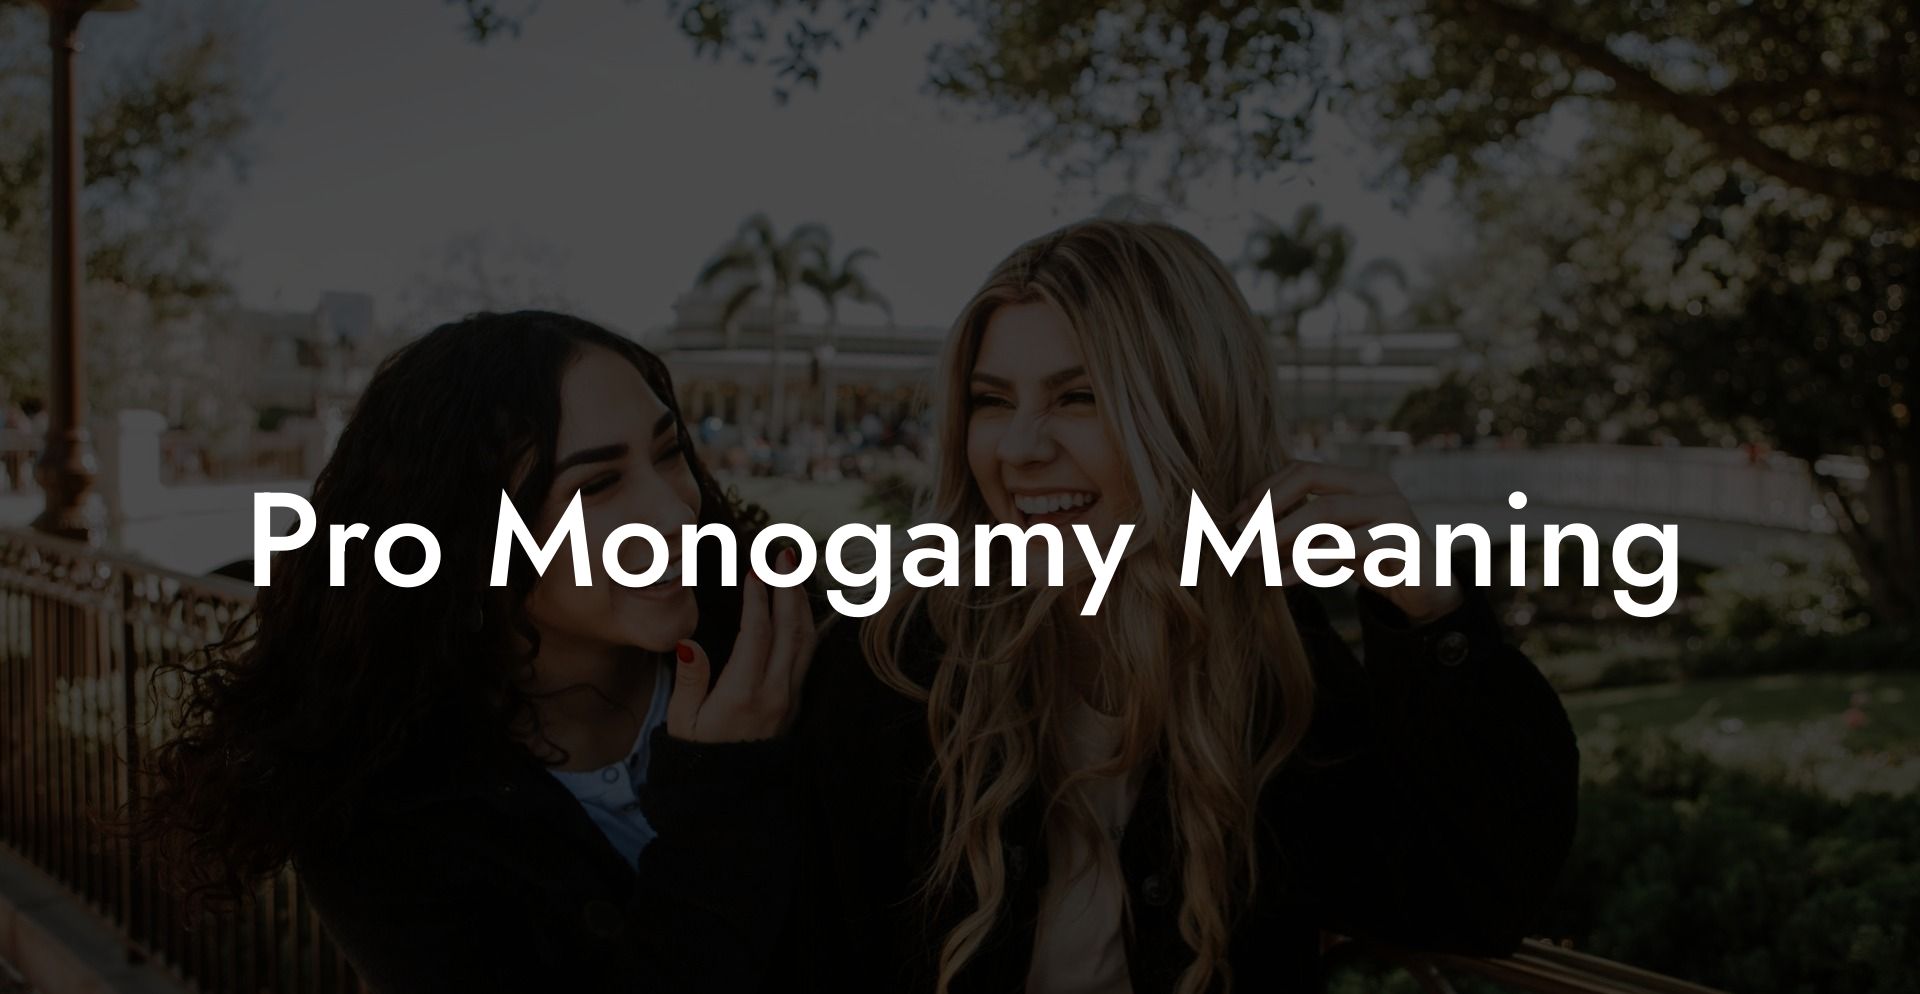 Pro Monogamy Meaning